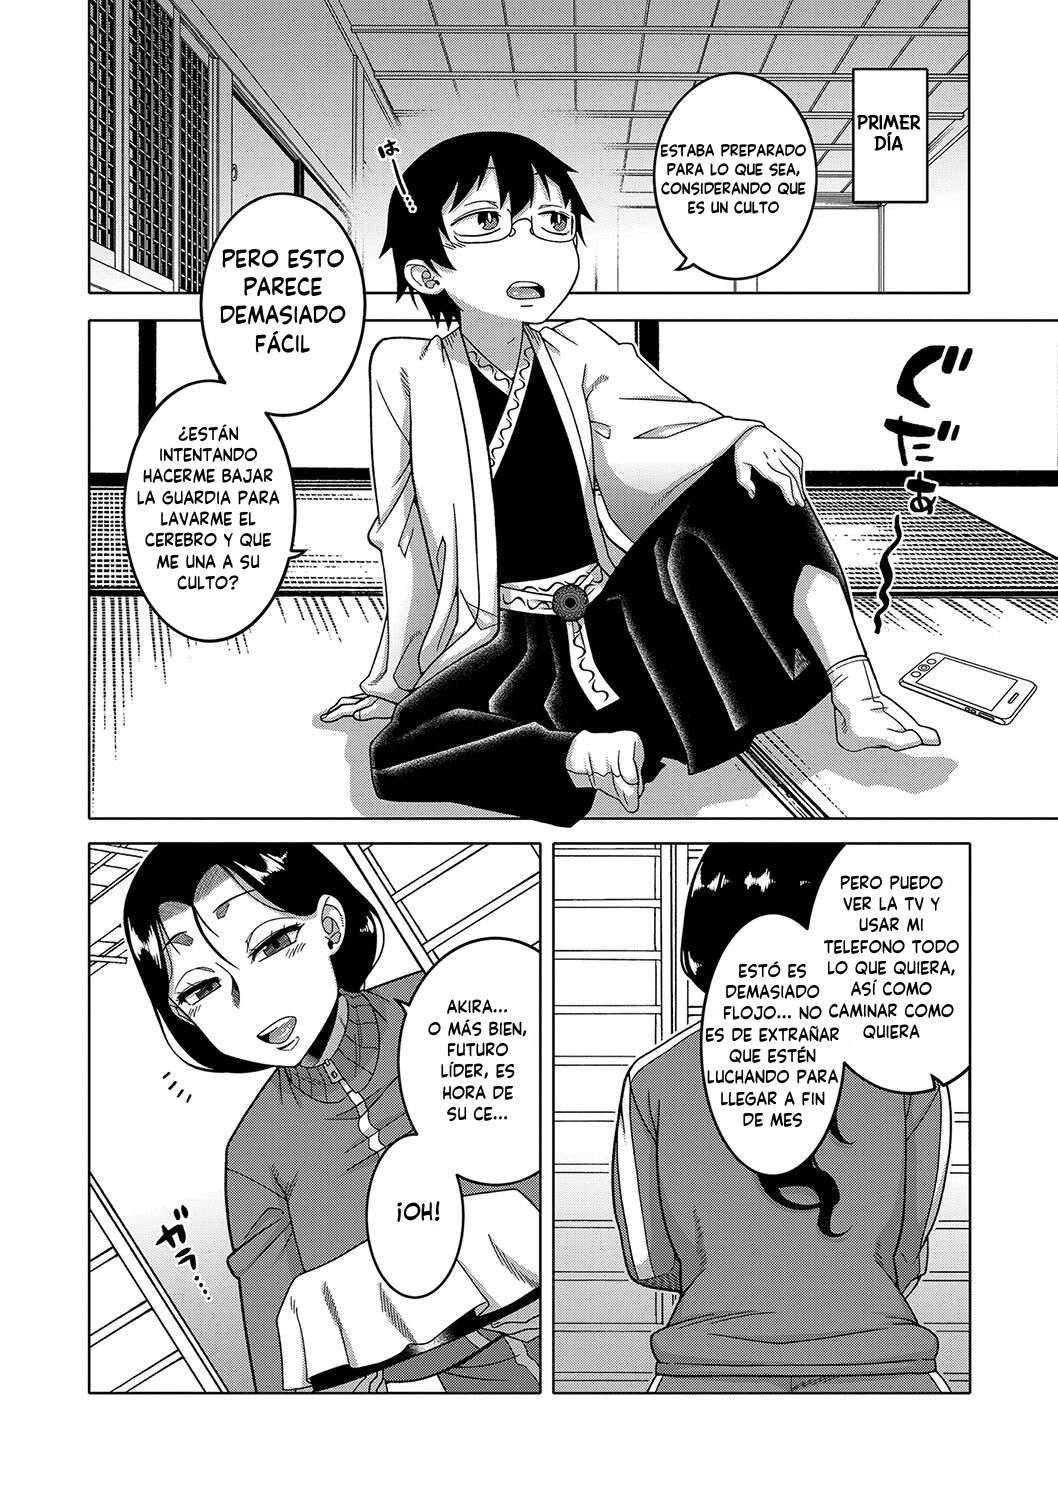 Manga KAMI-SAMA NO TSUKURIKATA-THE MAKING OF A CULT LEADER Chapter 1 image number 46